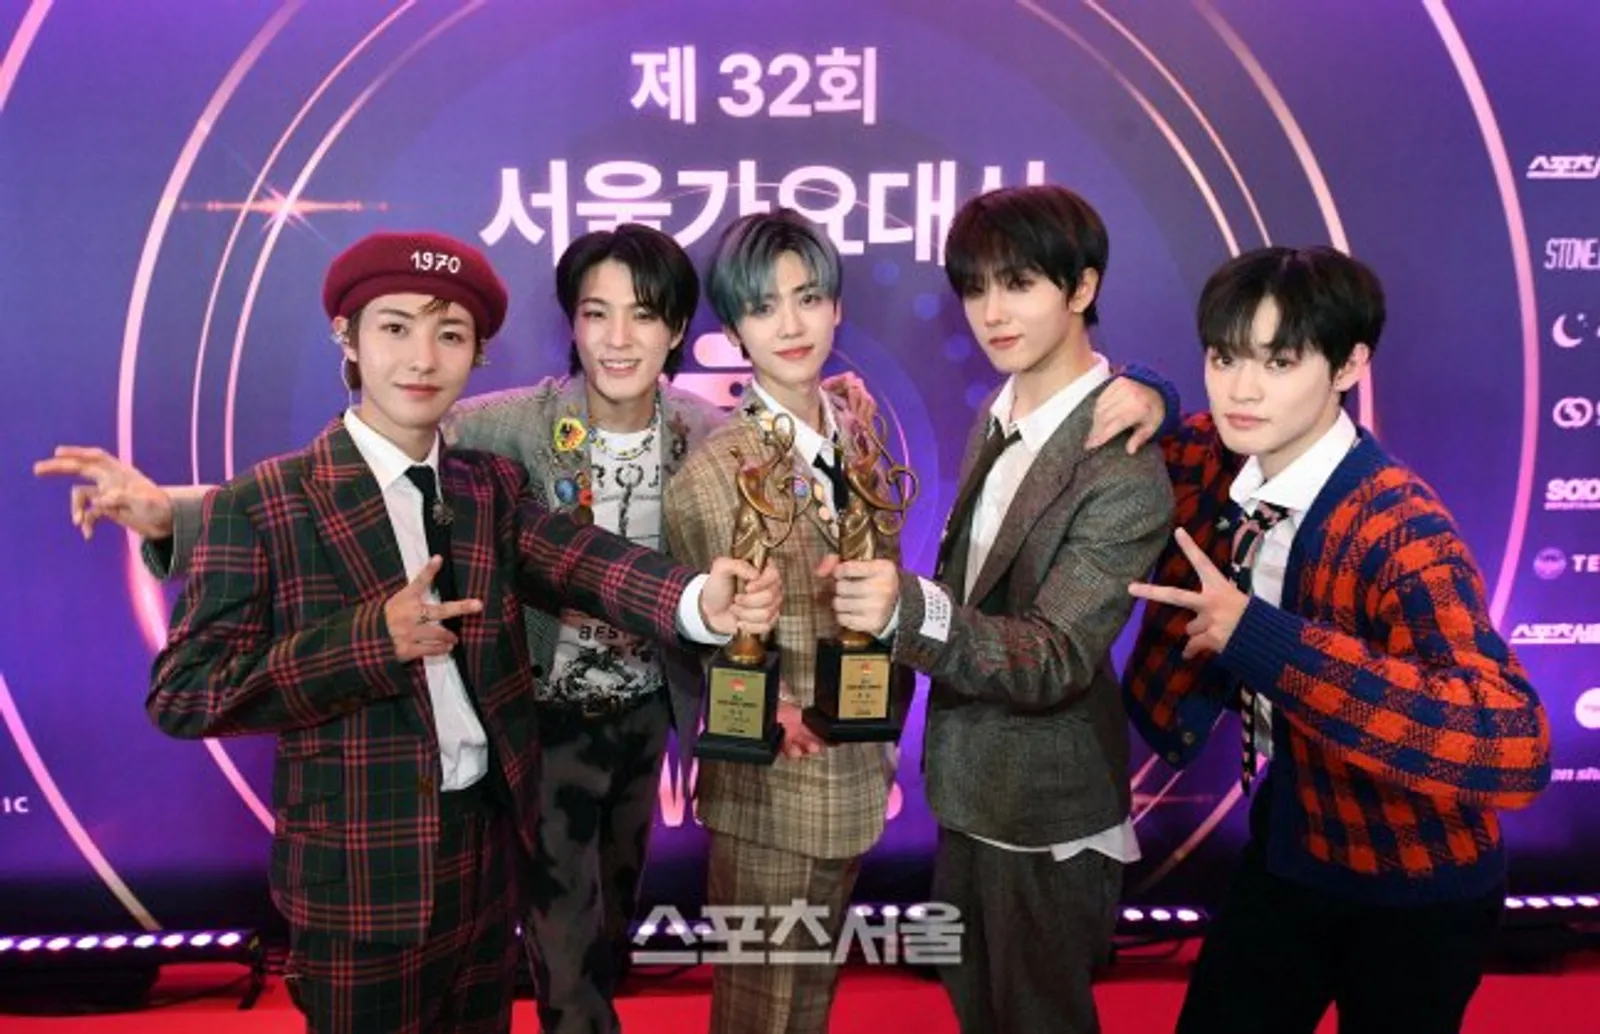 Daftar Pemenang Seoul Music Awards ke-32, NCT Dream Raih Daesang